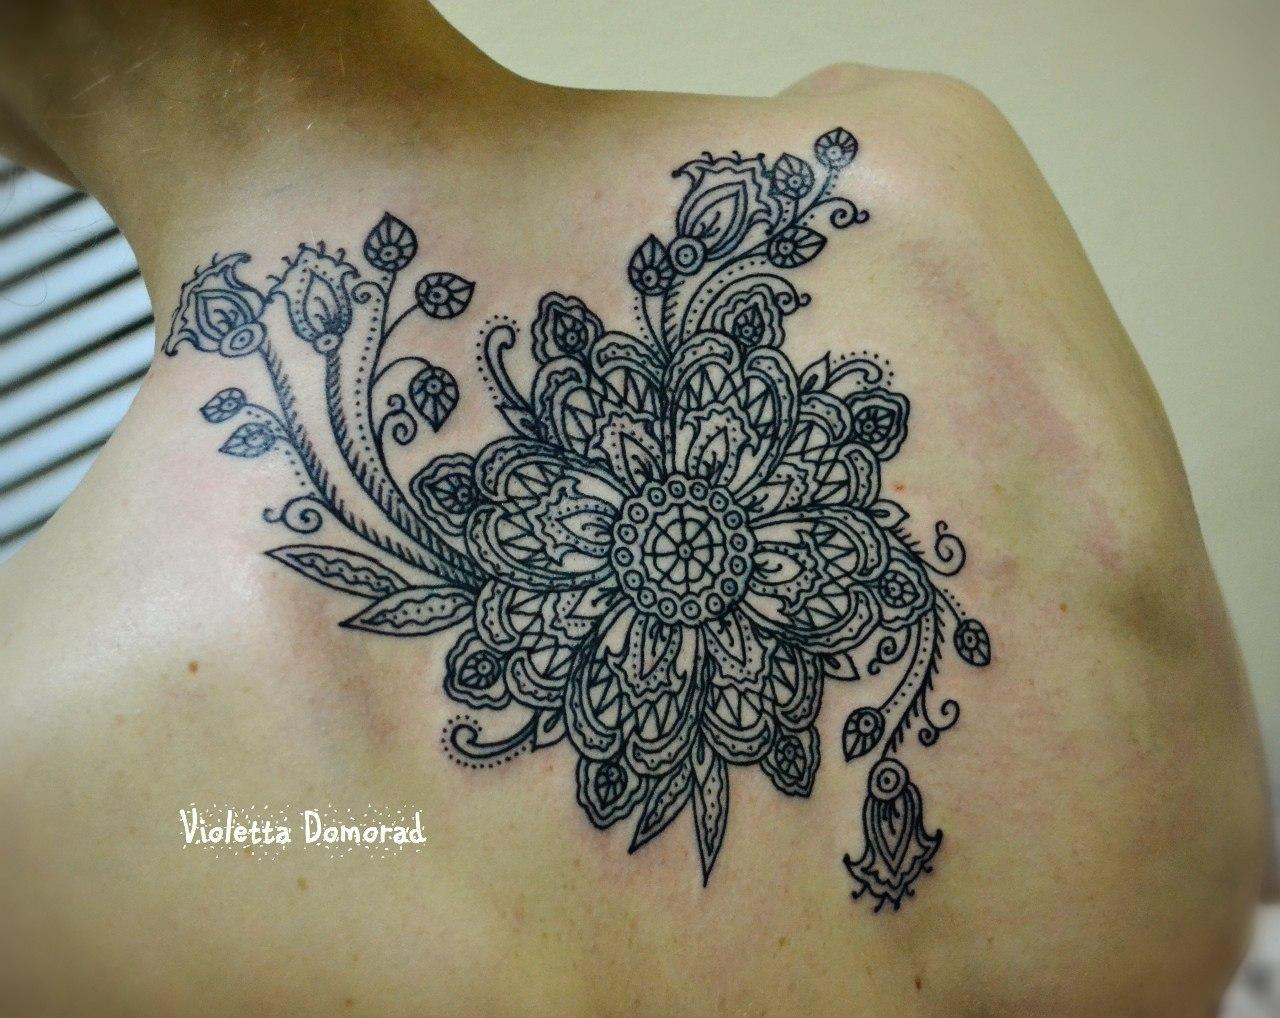 Татуировка выполнена на спине по индивидуальному эскизу в стиле индийских орнаментов. Мастер Виолетта Доморад. Один небольшой сенанс